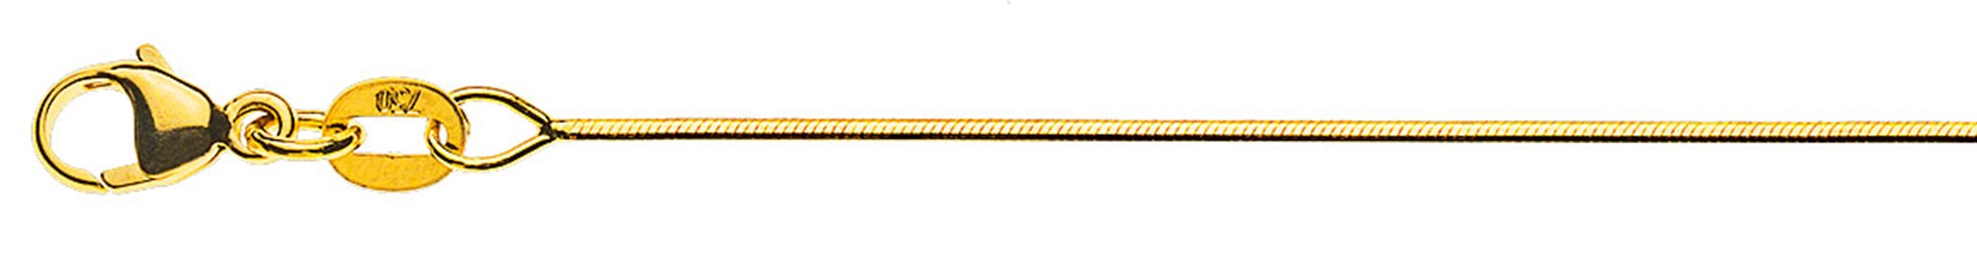 AURONOS Prestige Halskette Gelbgold 18K Schlangenkette diamantiert 40cm 0.8mm